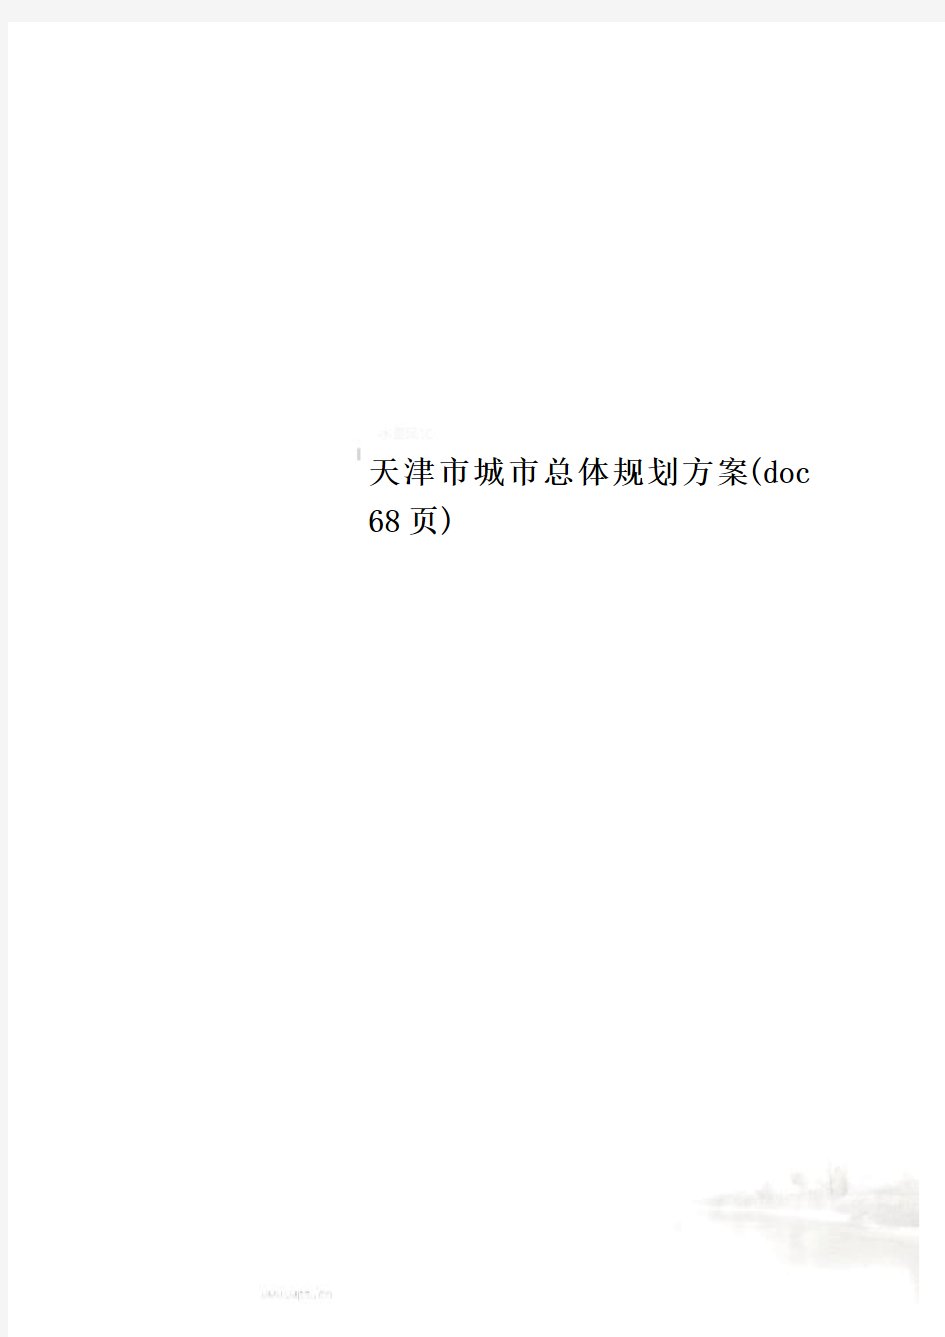 天津市城市总体规划方案(doc 68页)